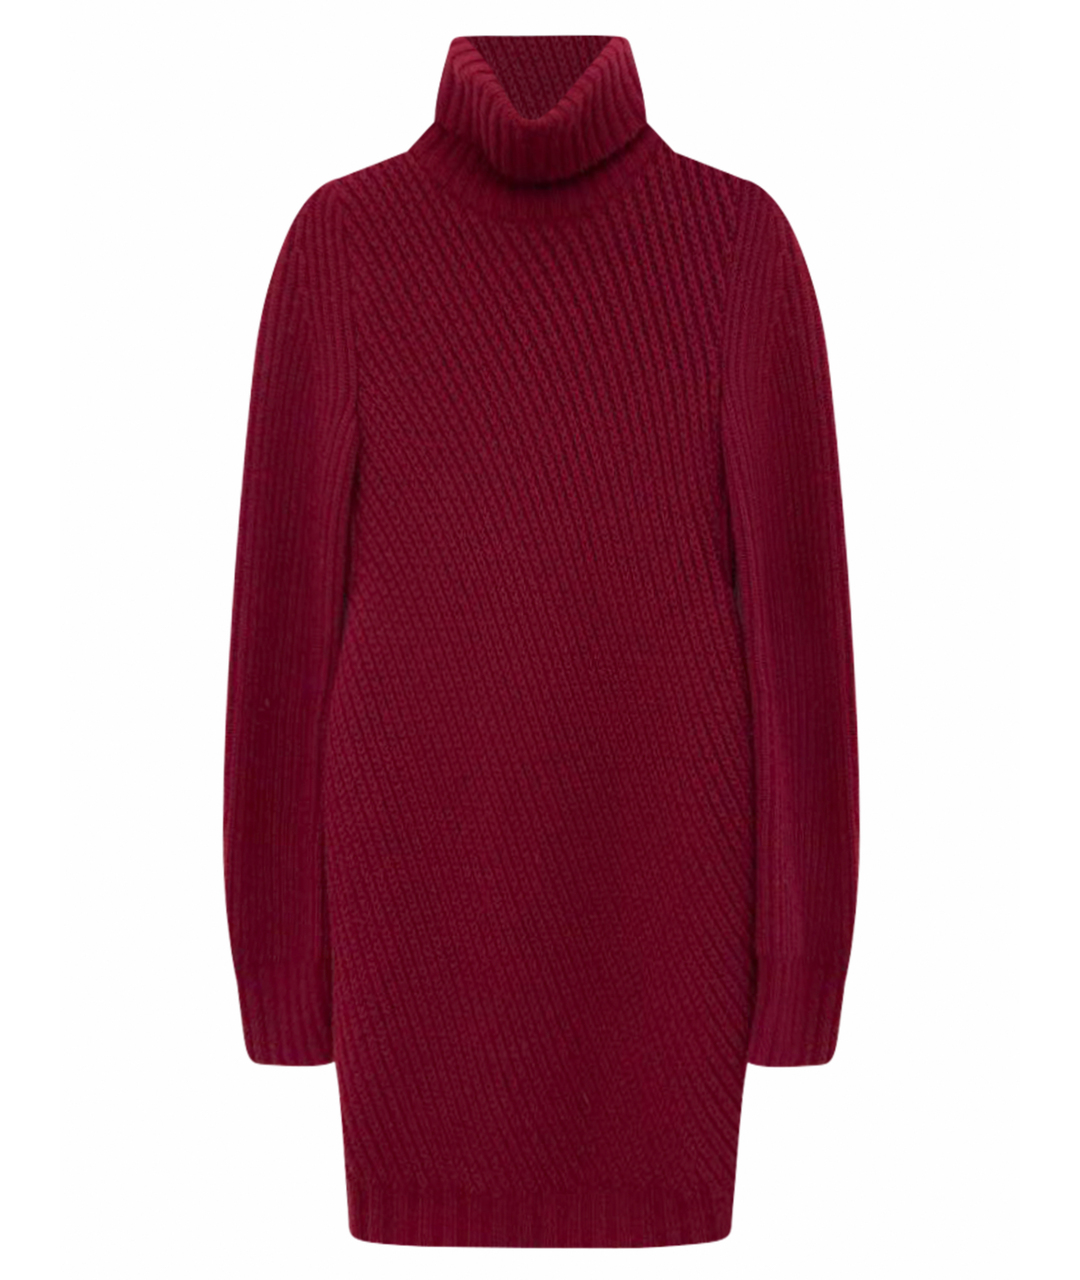 CELINE PRE-OWNED Бордовый кашемировый джемпер / свитер, фото 1